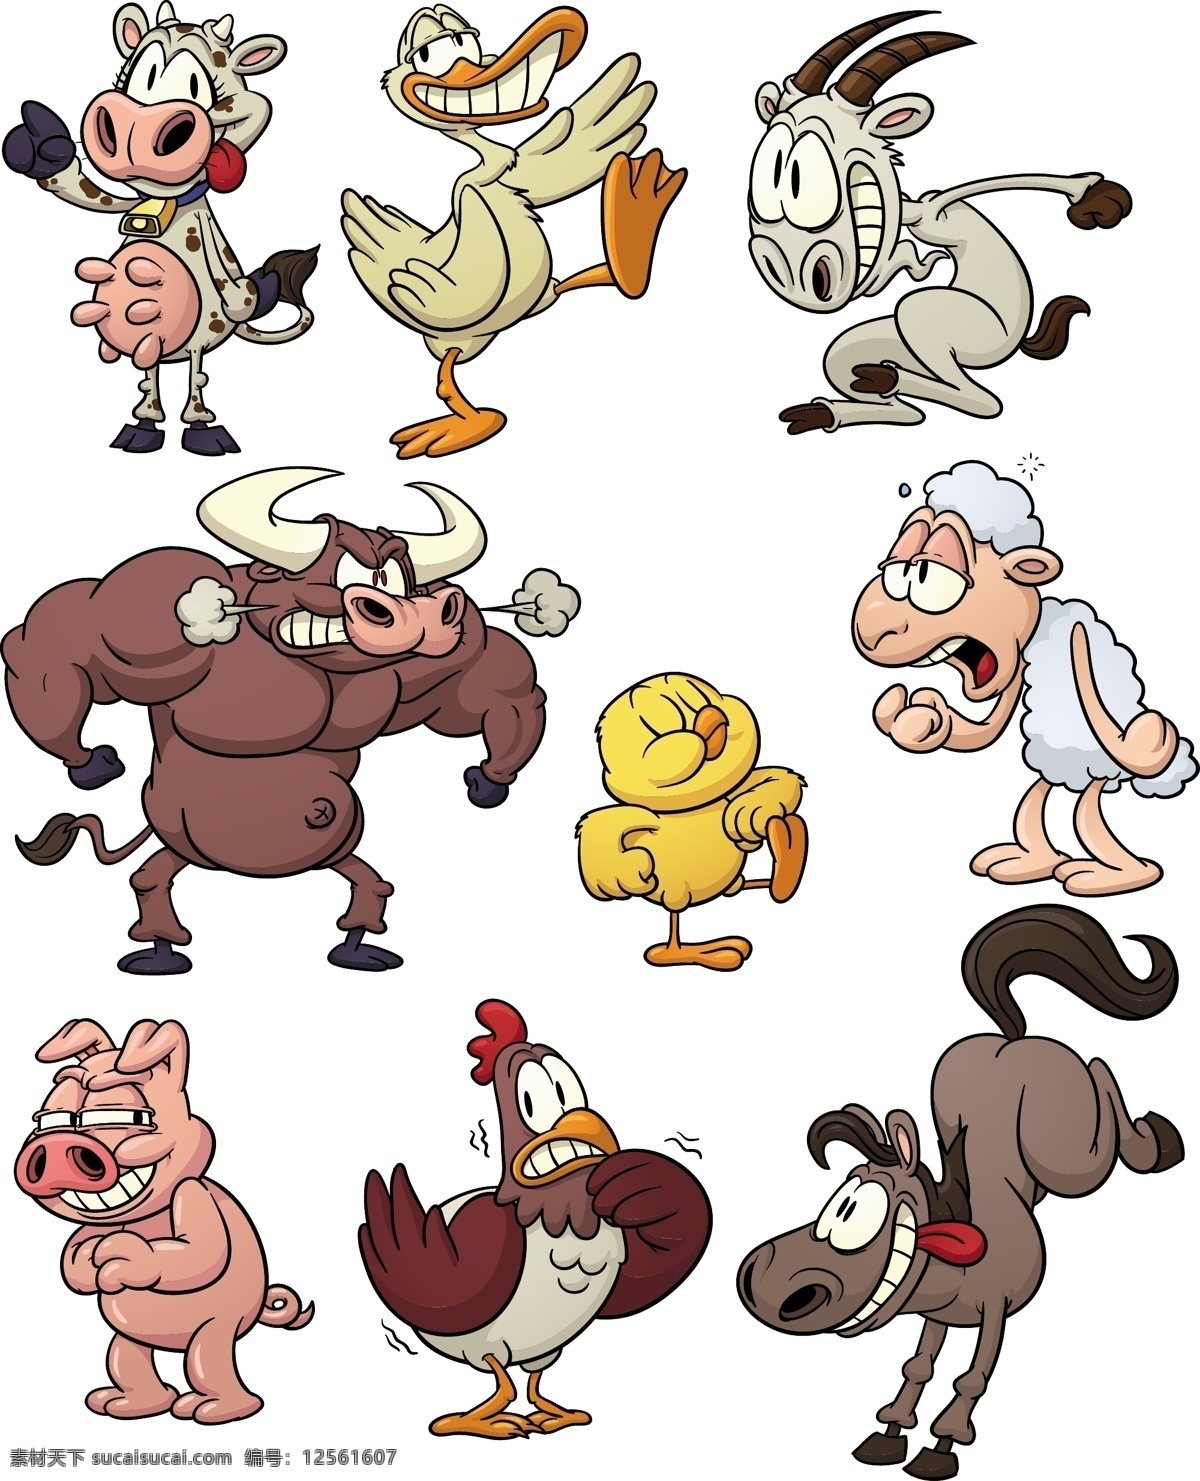 各种 动物 卡通 图 卡通鸡 卡通牛 卡通猪 卡通羊 卡通山羊 卡通公鸡 卡通设计